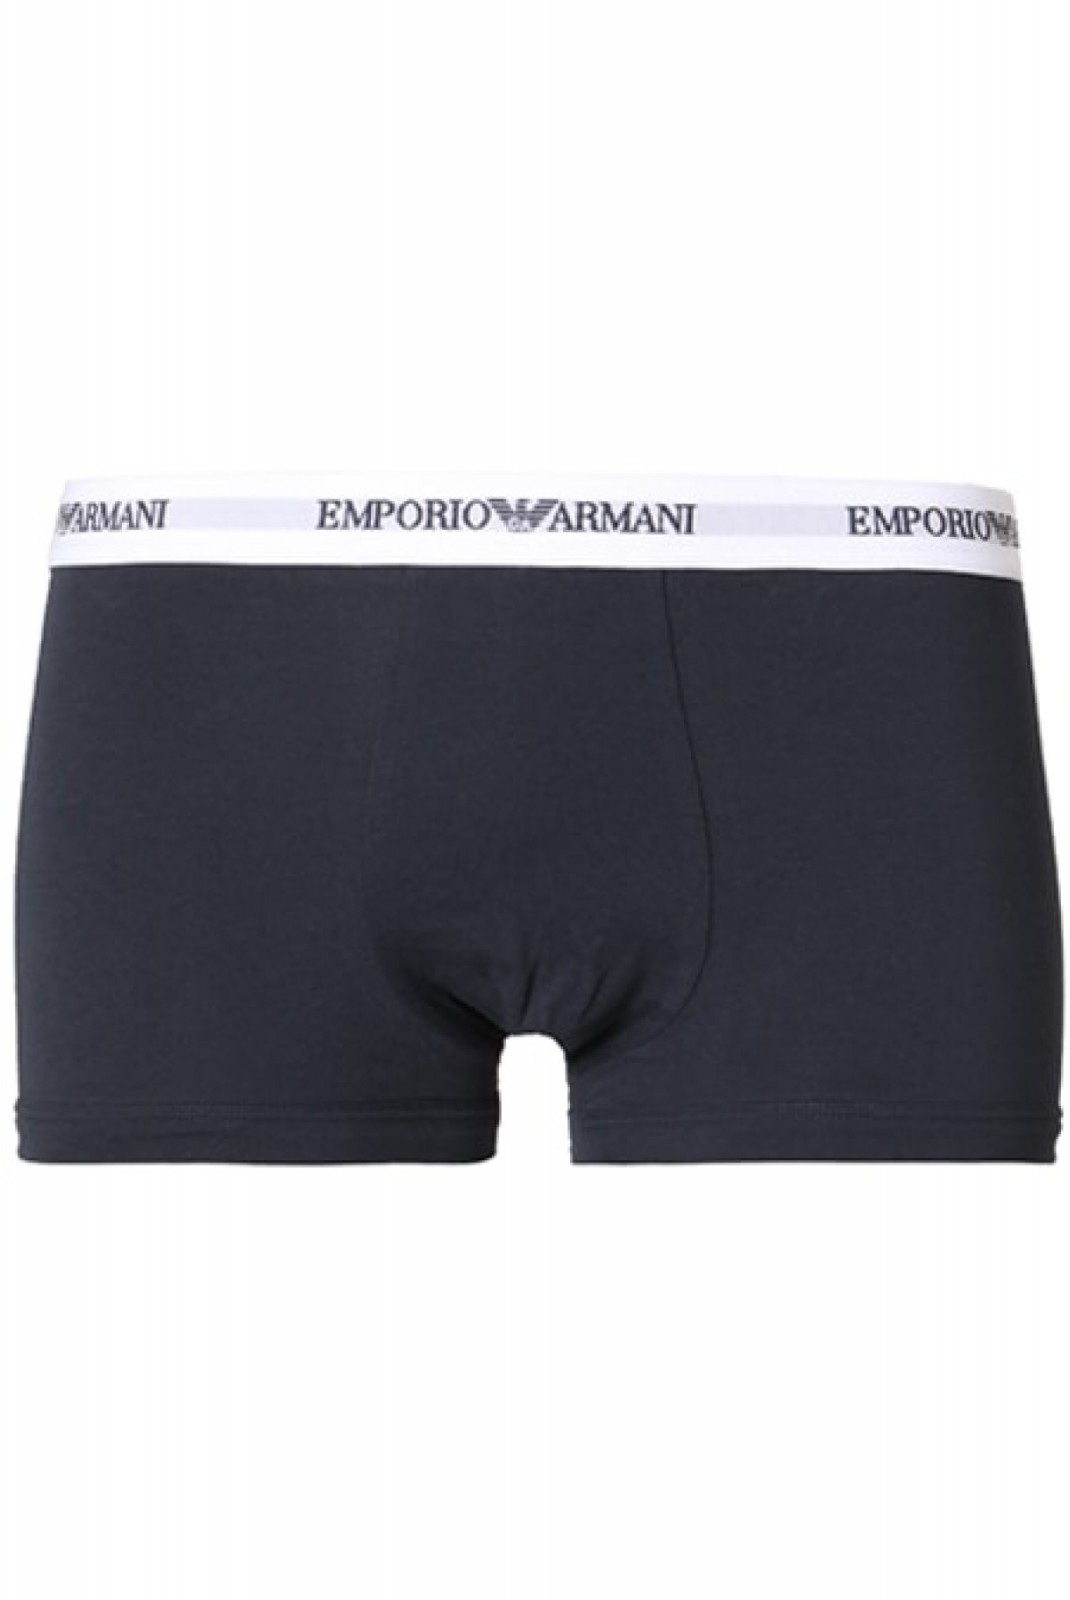 Bipack boxers coton stretch Emporio armani 10410 Bianco/Marine 111210 CC717